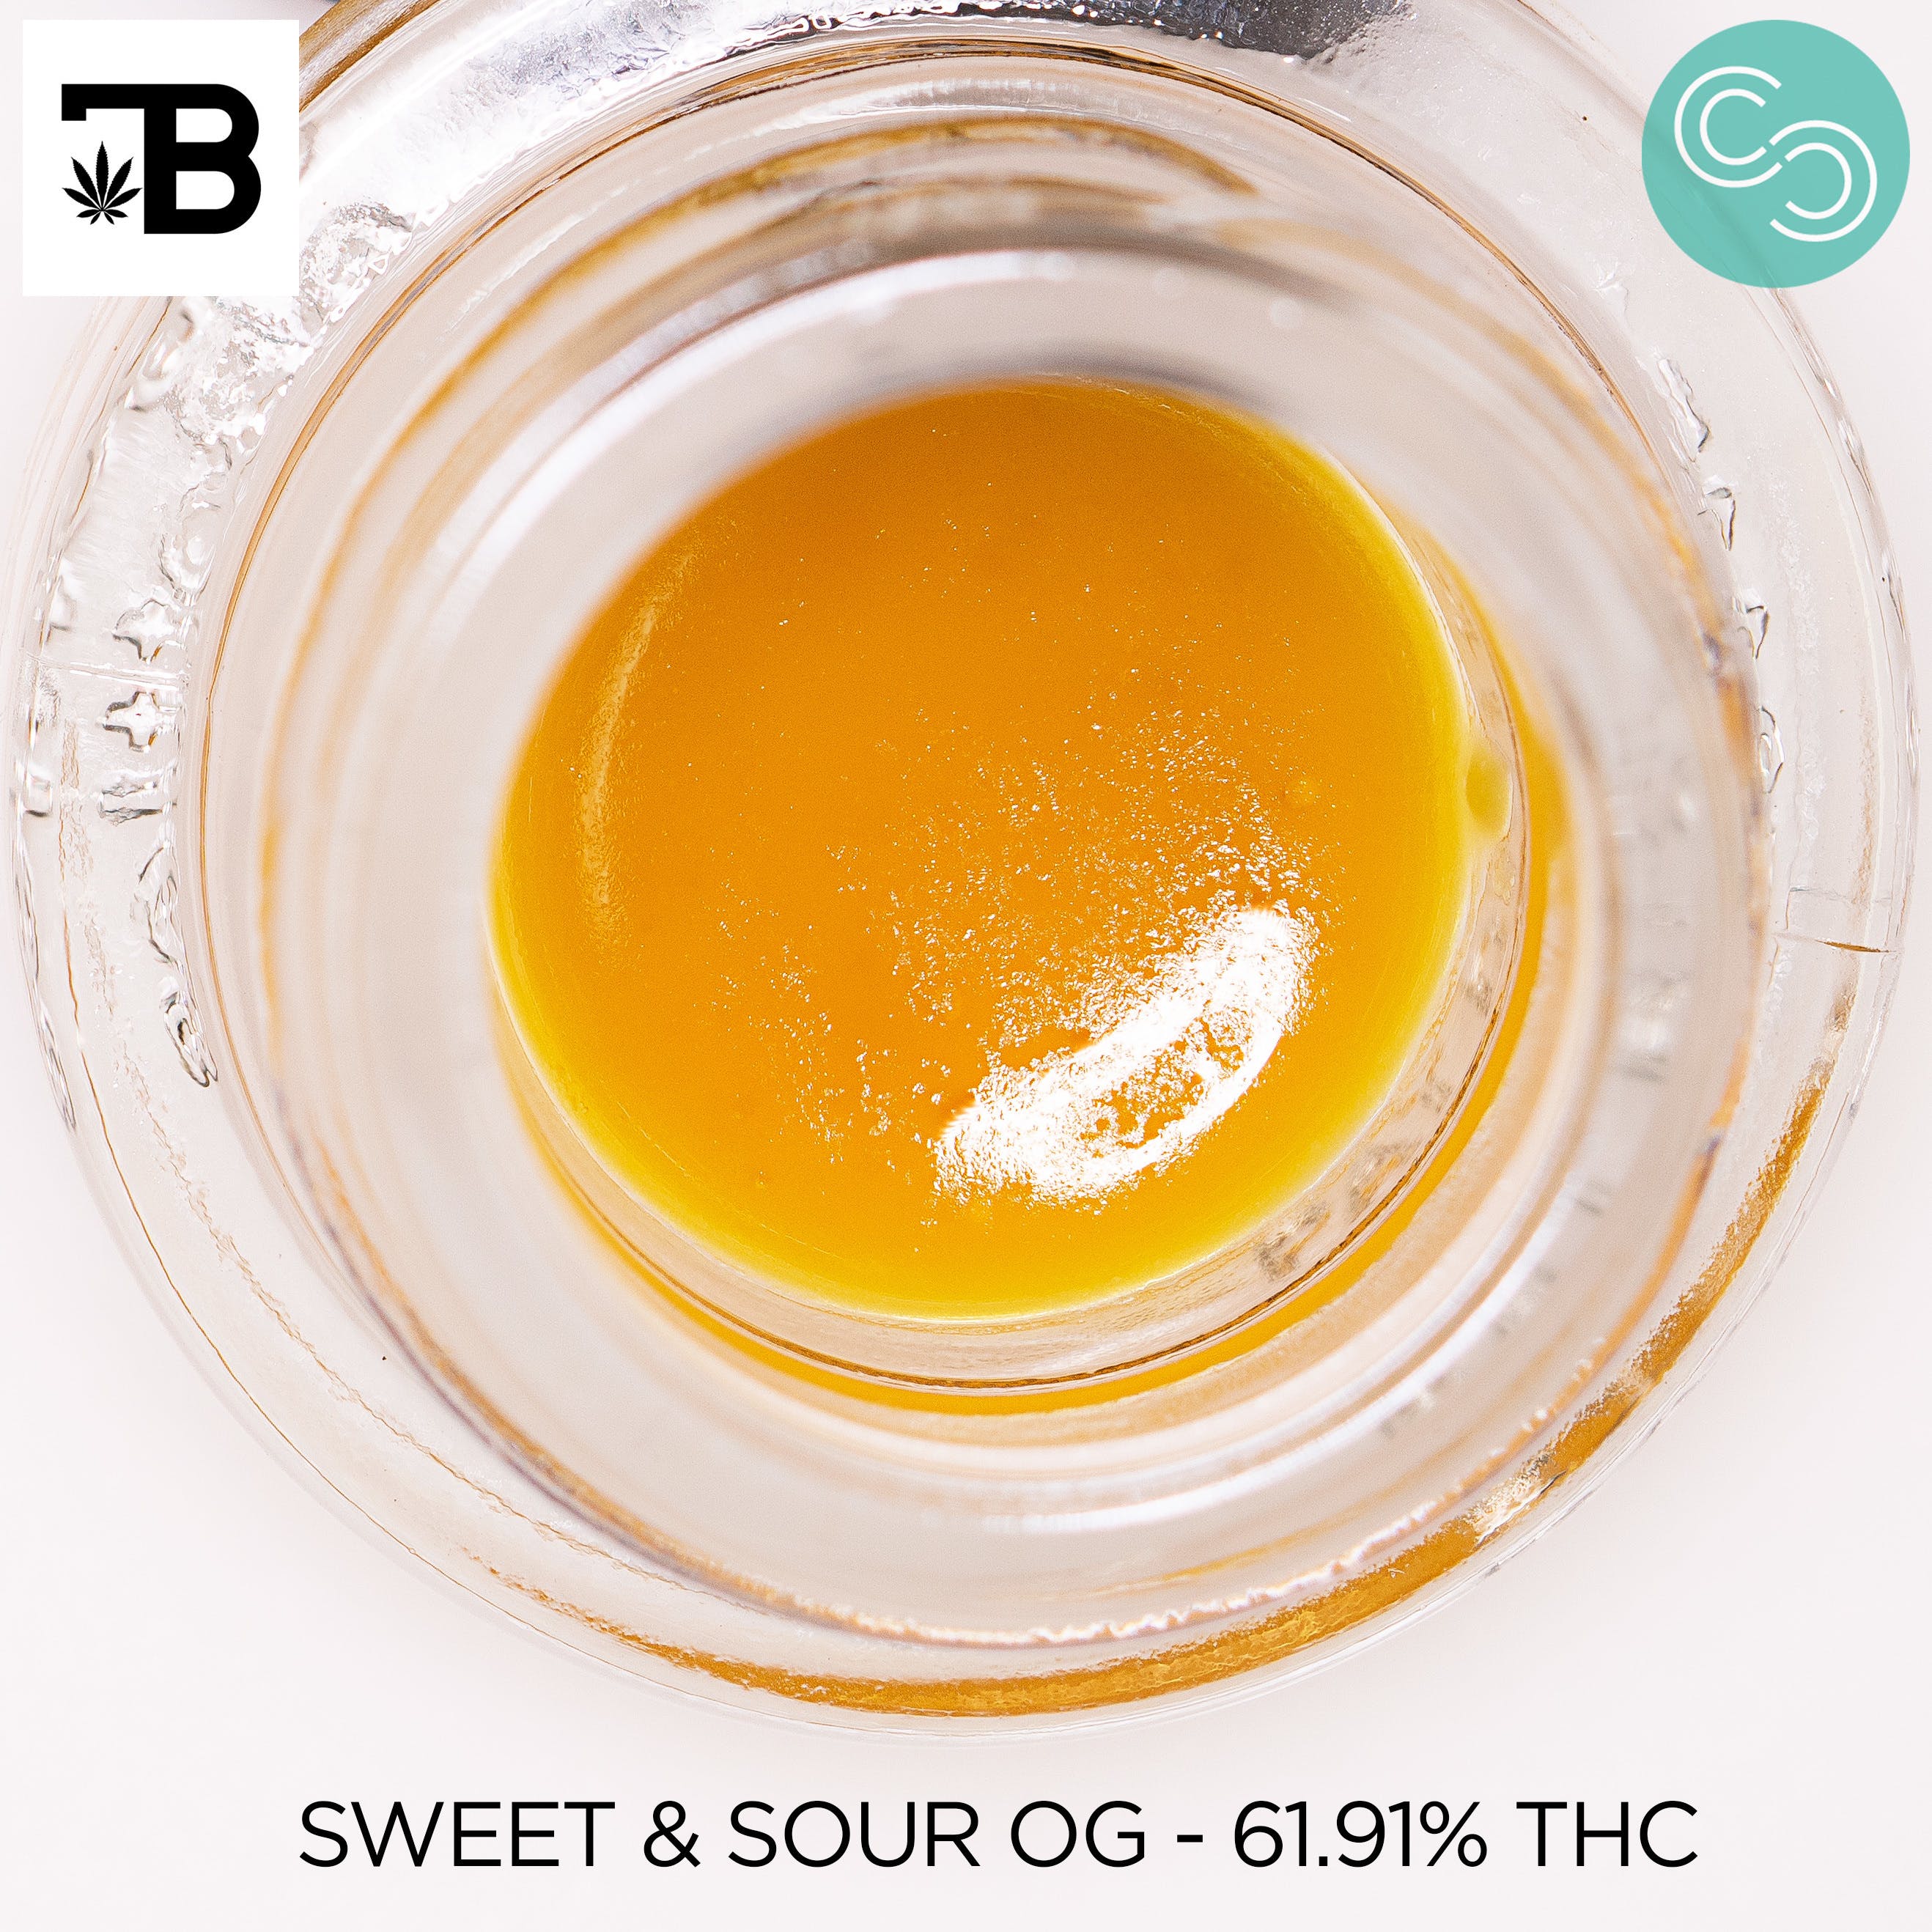 Terp Boys - Sweet & Sour OG - 61.91% THC